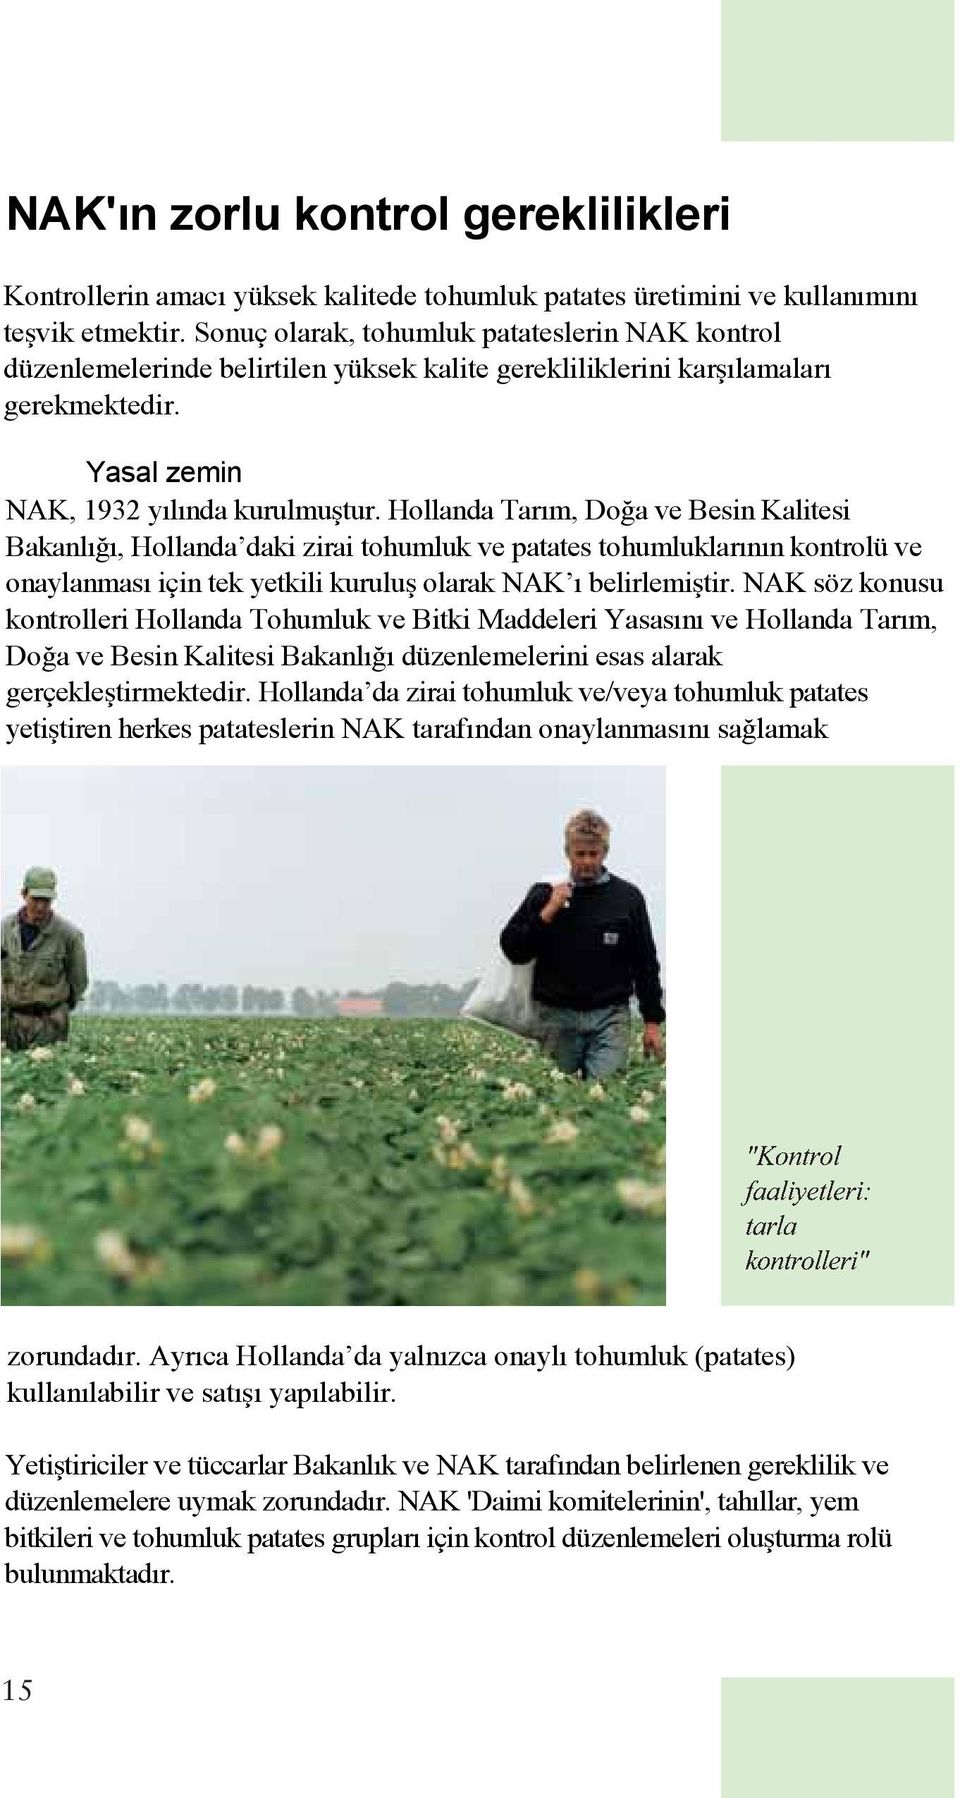 Hollanda Tarım, Do a ve Besin Kalitesi Bakanlı ı, Hollanda daki zirai tohumluk ve patates tohumluklarının kontrolü ve onaylanması için tek yetkili kurulu olarak NAK ı belirlemi tir.